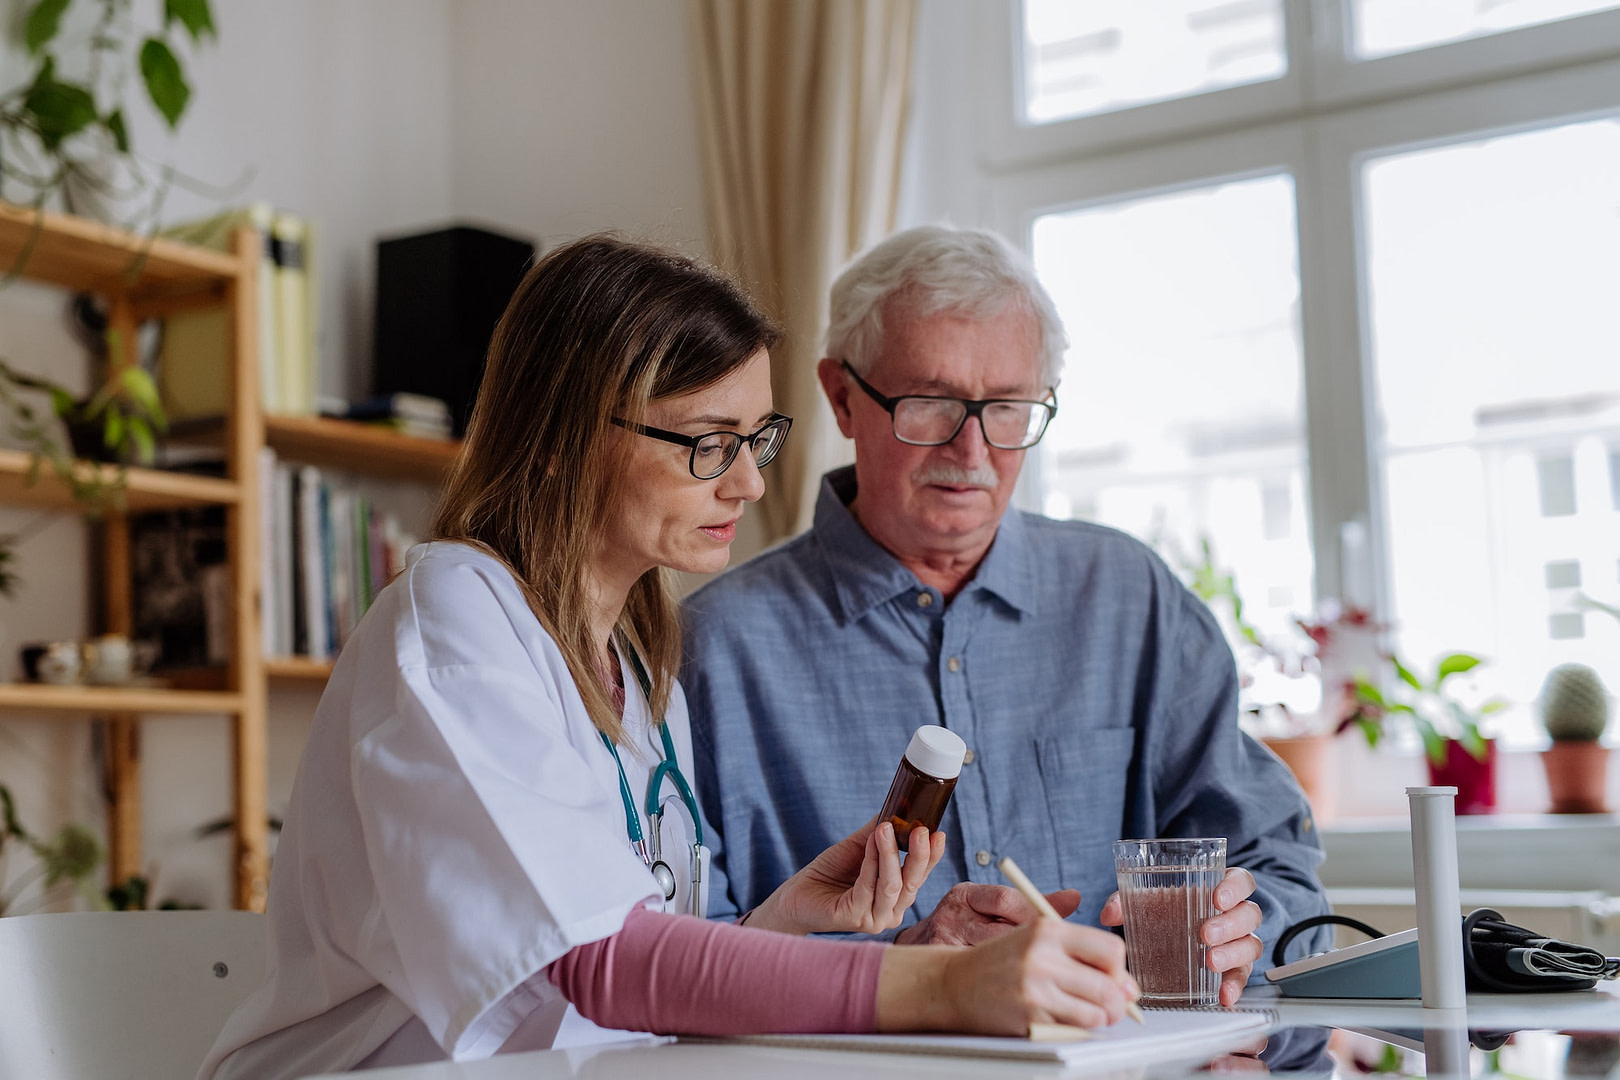 Healthcare worker or caregiver visiting senior man indoors at home, explaining medicine dosage.